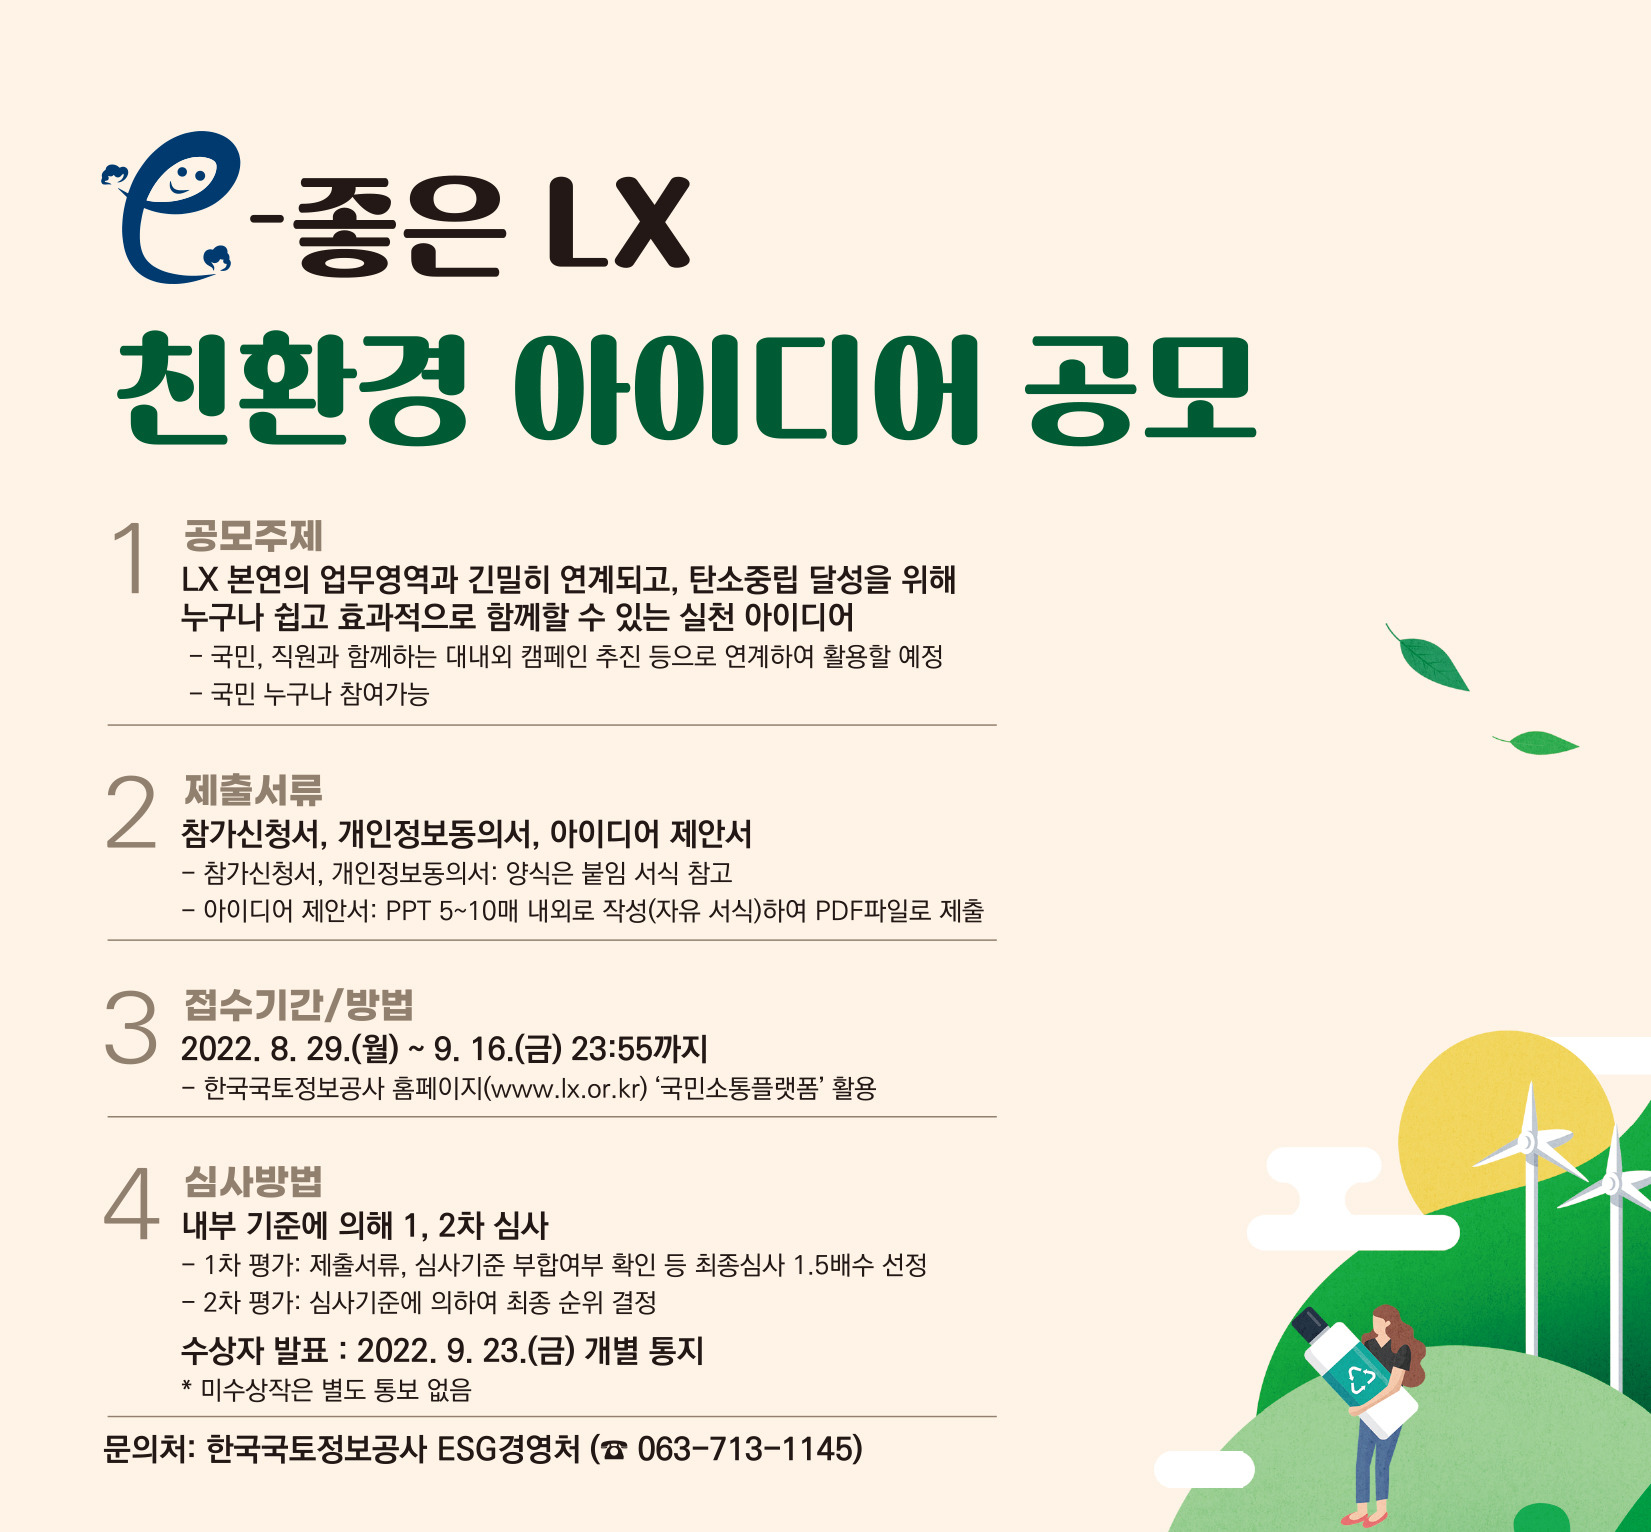 포스터_e-좋은 LX 친환경 아이디어 공모